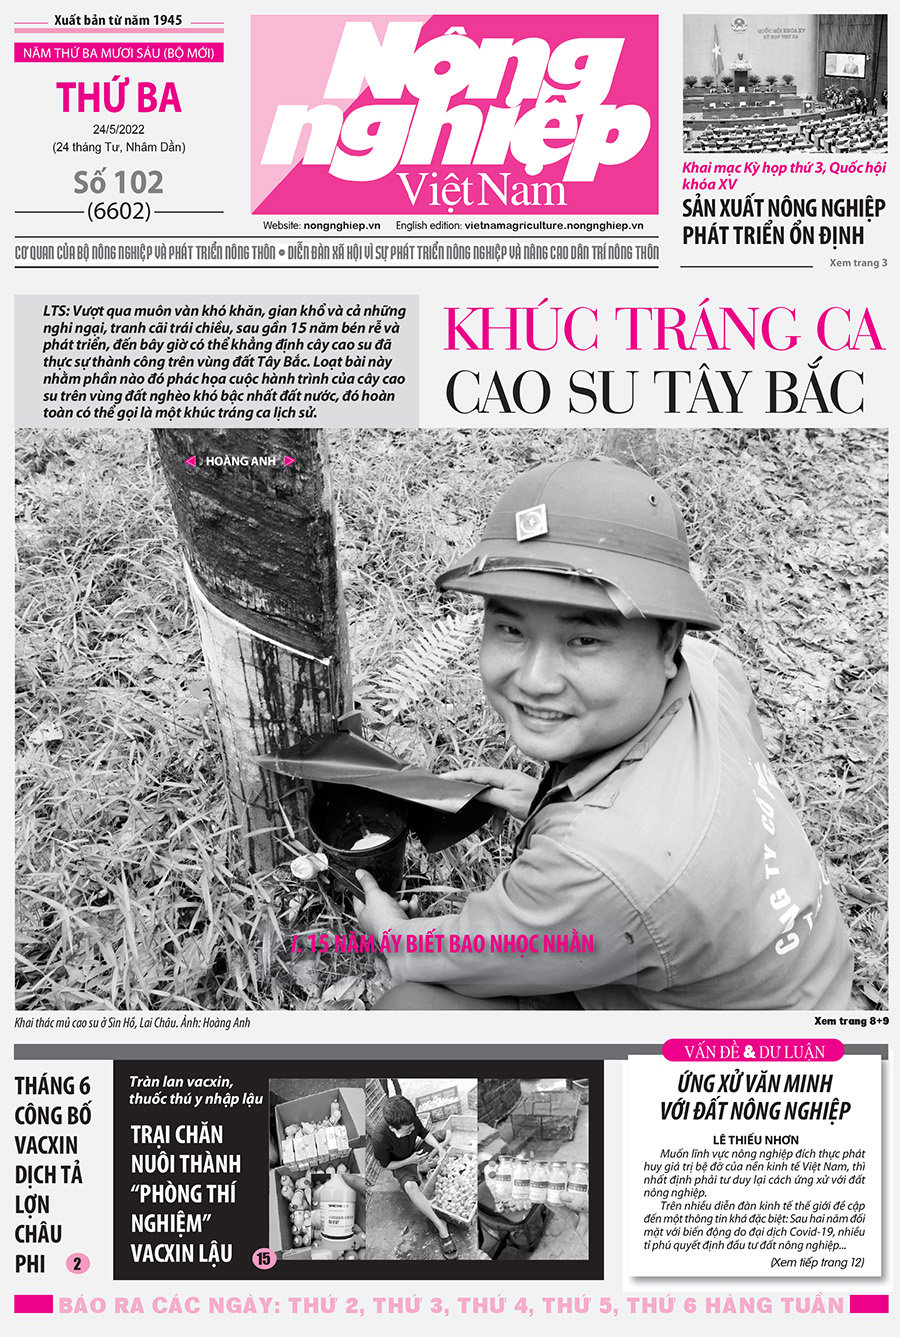 Tổng hợp tin tức báo giấy trên Báo Nông nghiệp Việt Nam số 102 ra ngày 24/5/2022